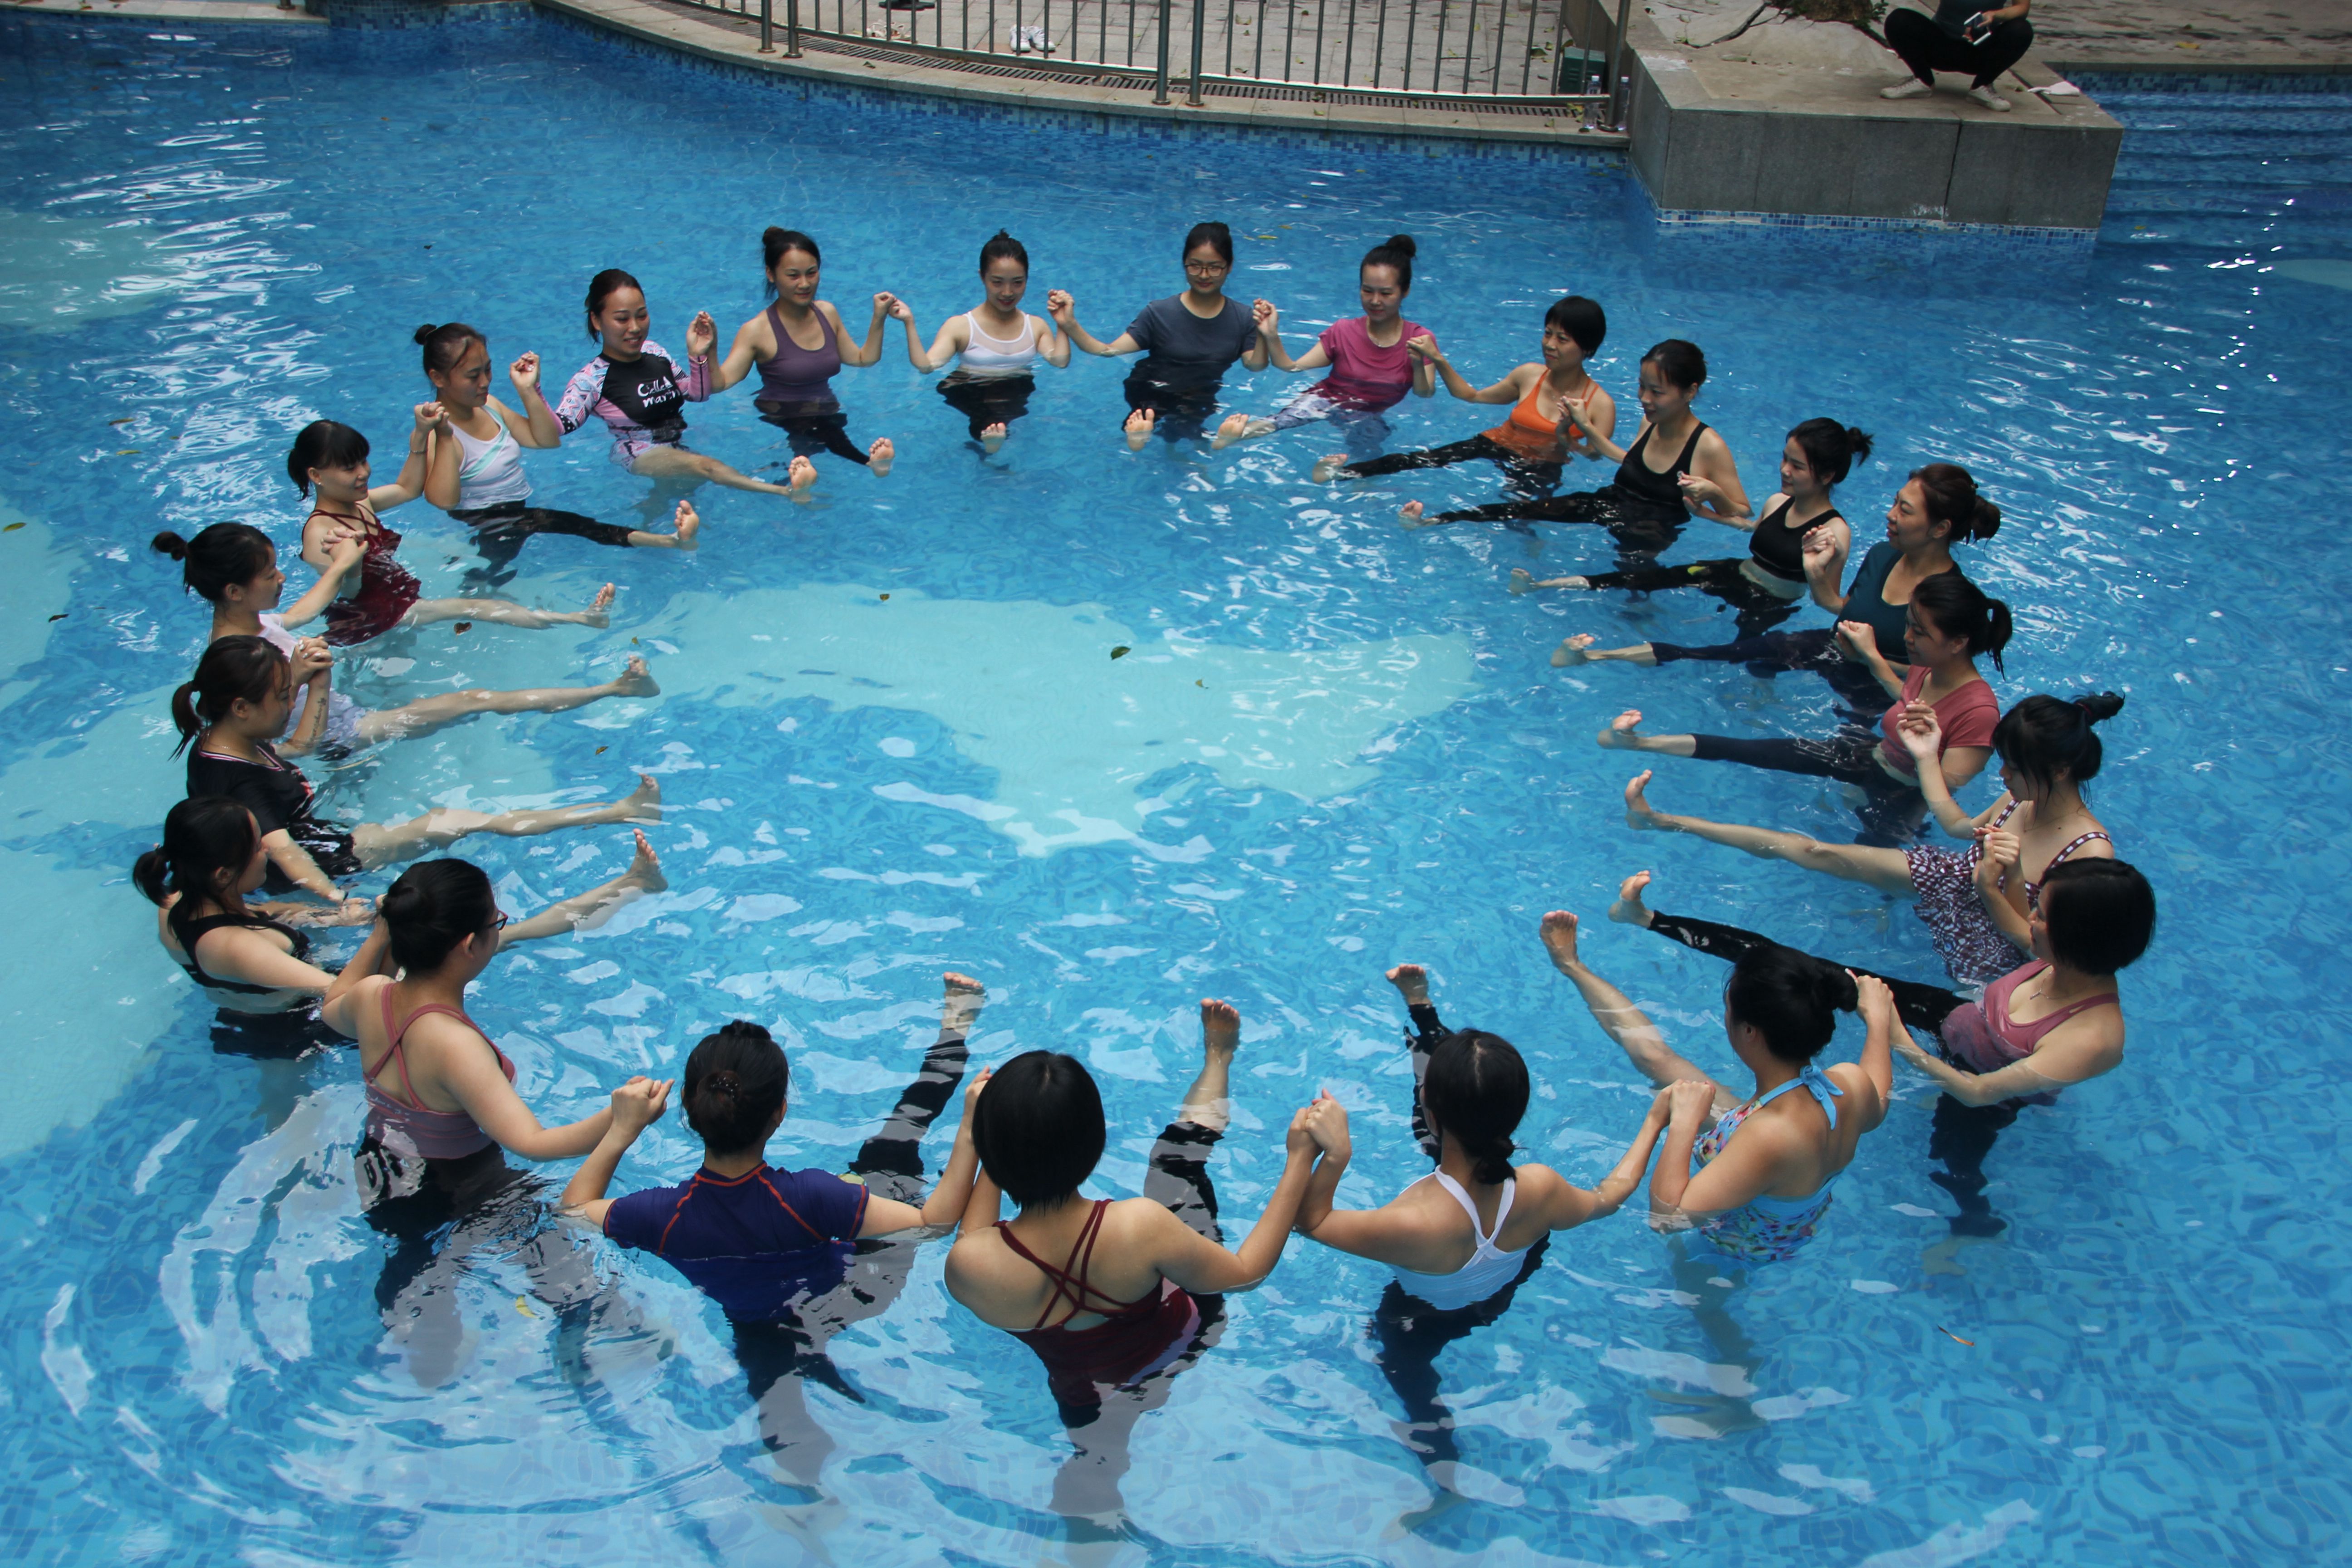 会馆介绍_晴瑜伽园_广州白云区瑜伽馆,提供瑜伽培训、有氧运动课程